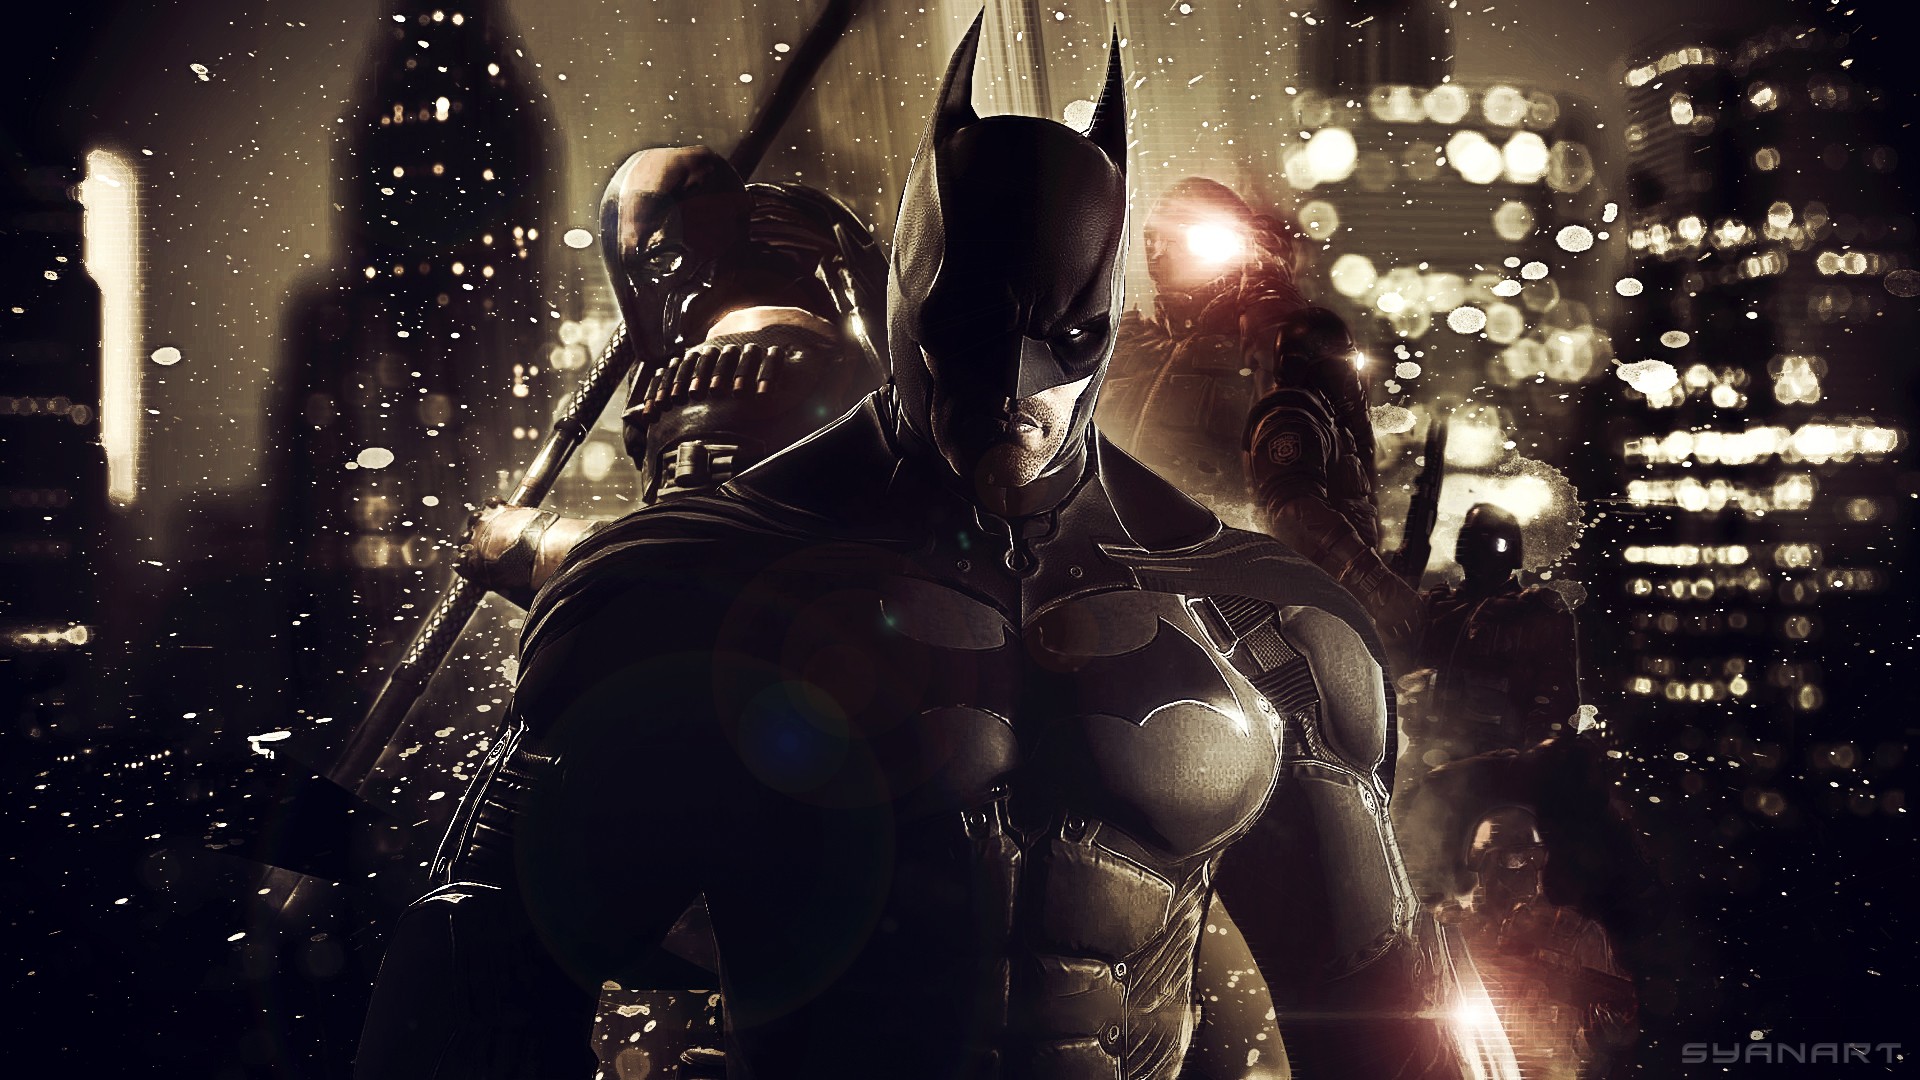 HD wallpaper: Batman, Batman: Arkham Origins, video games